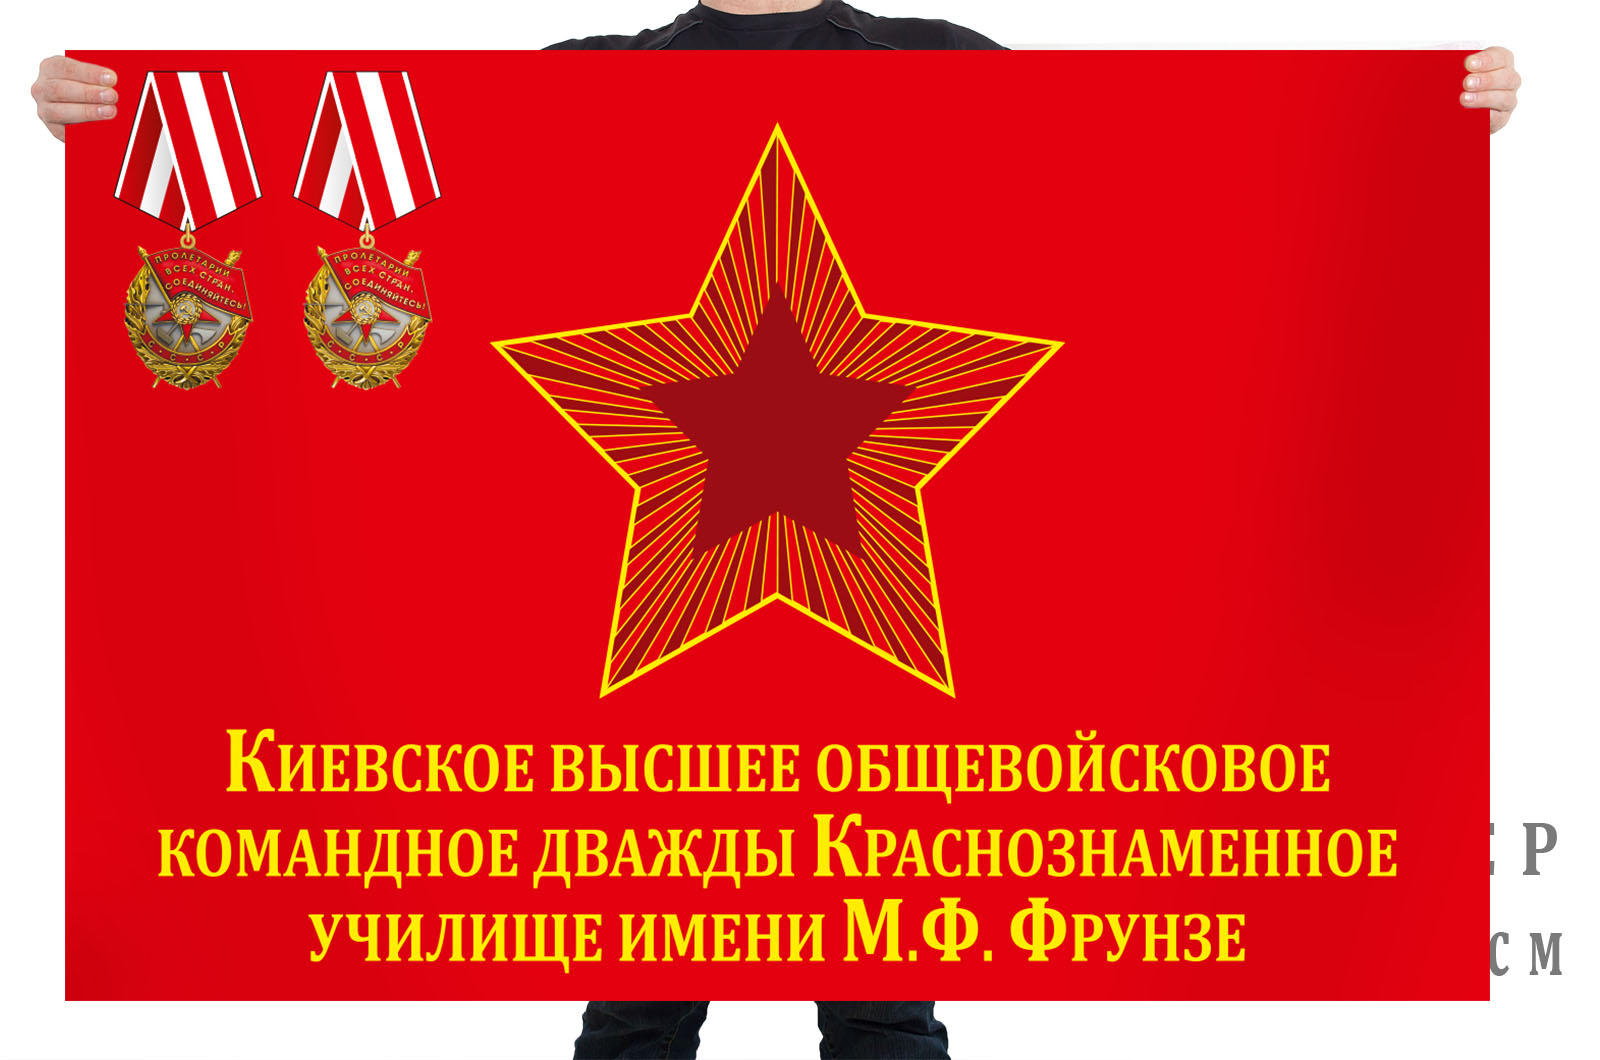 Купить флаг Киевское высшее общевойсковое командное училище